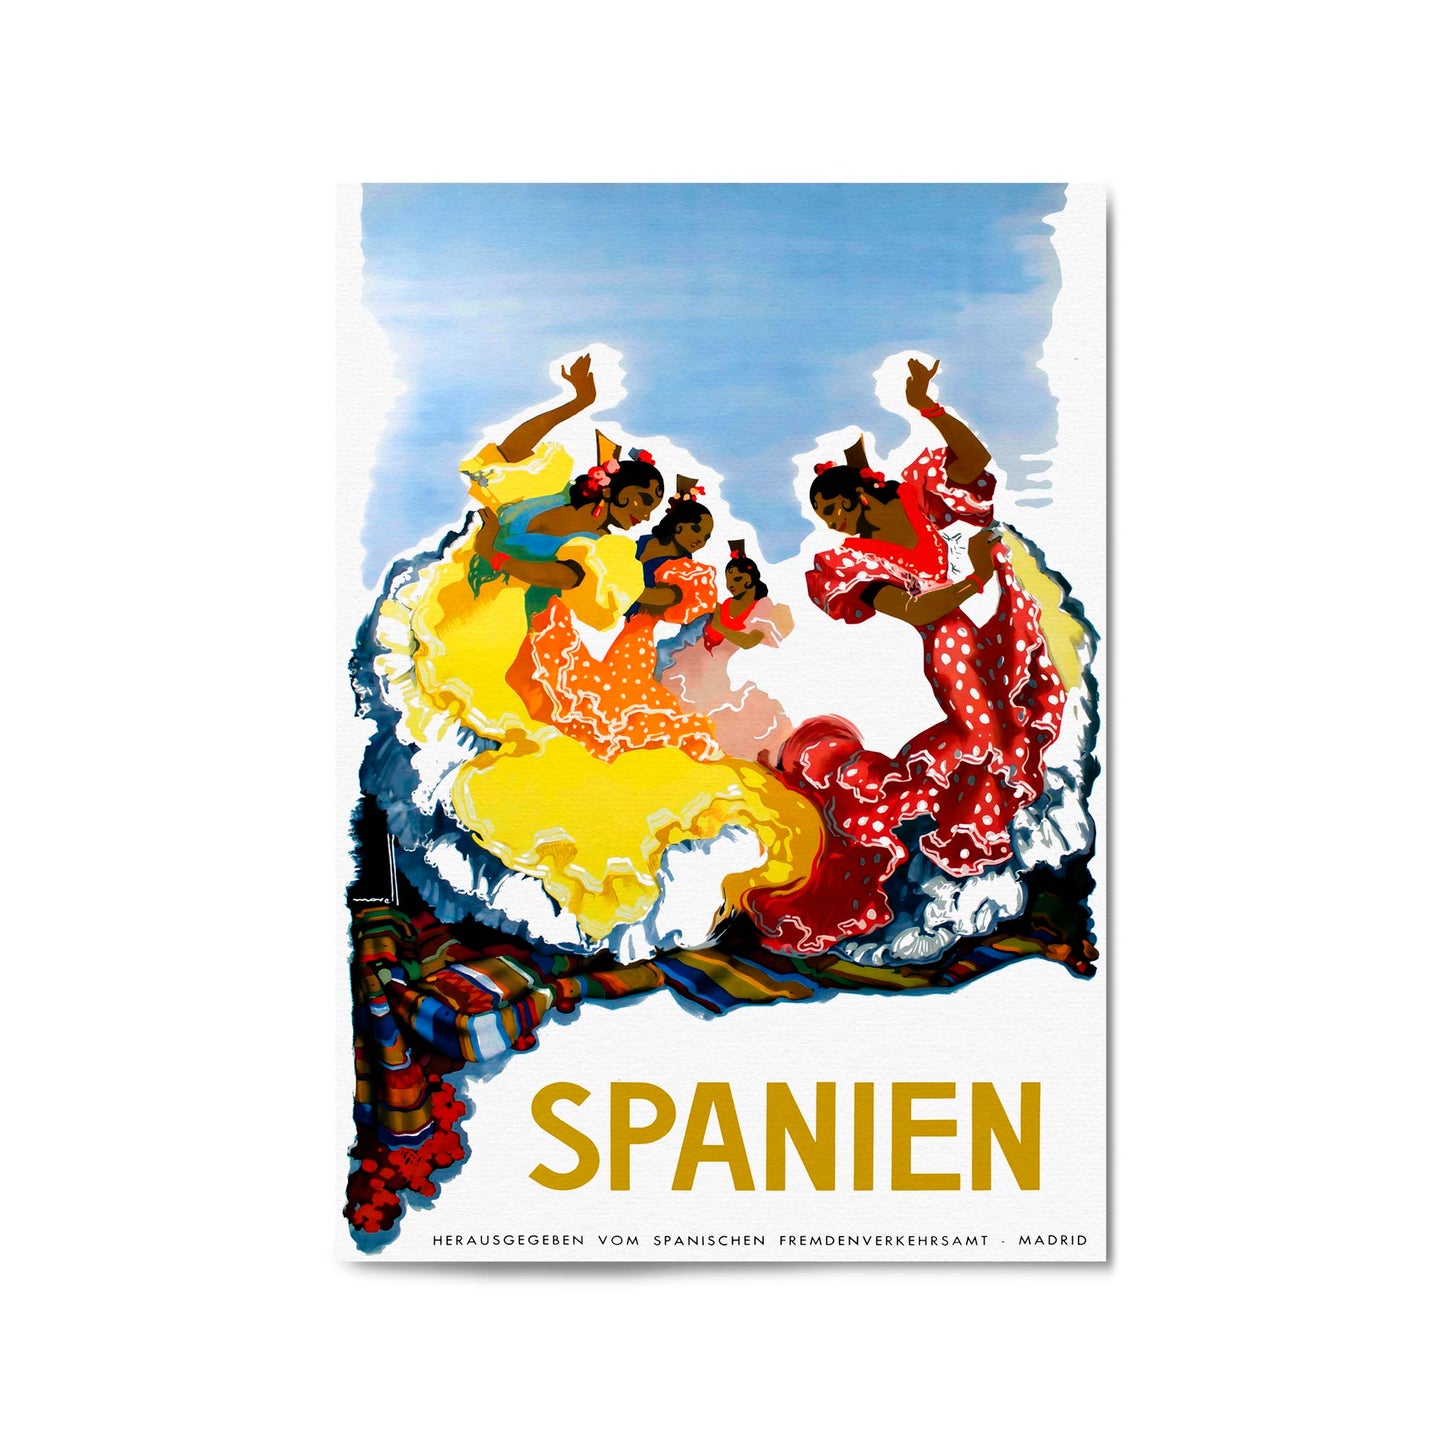 Flamenco Dancers, Spain | Framed Vintage Travel Poster